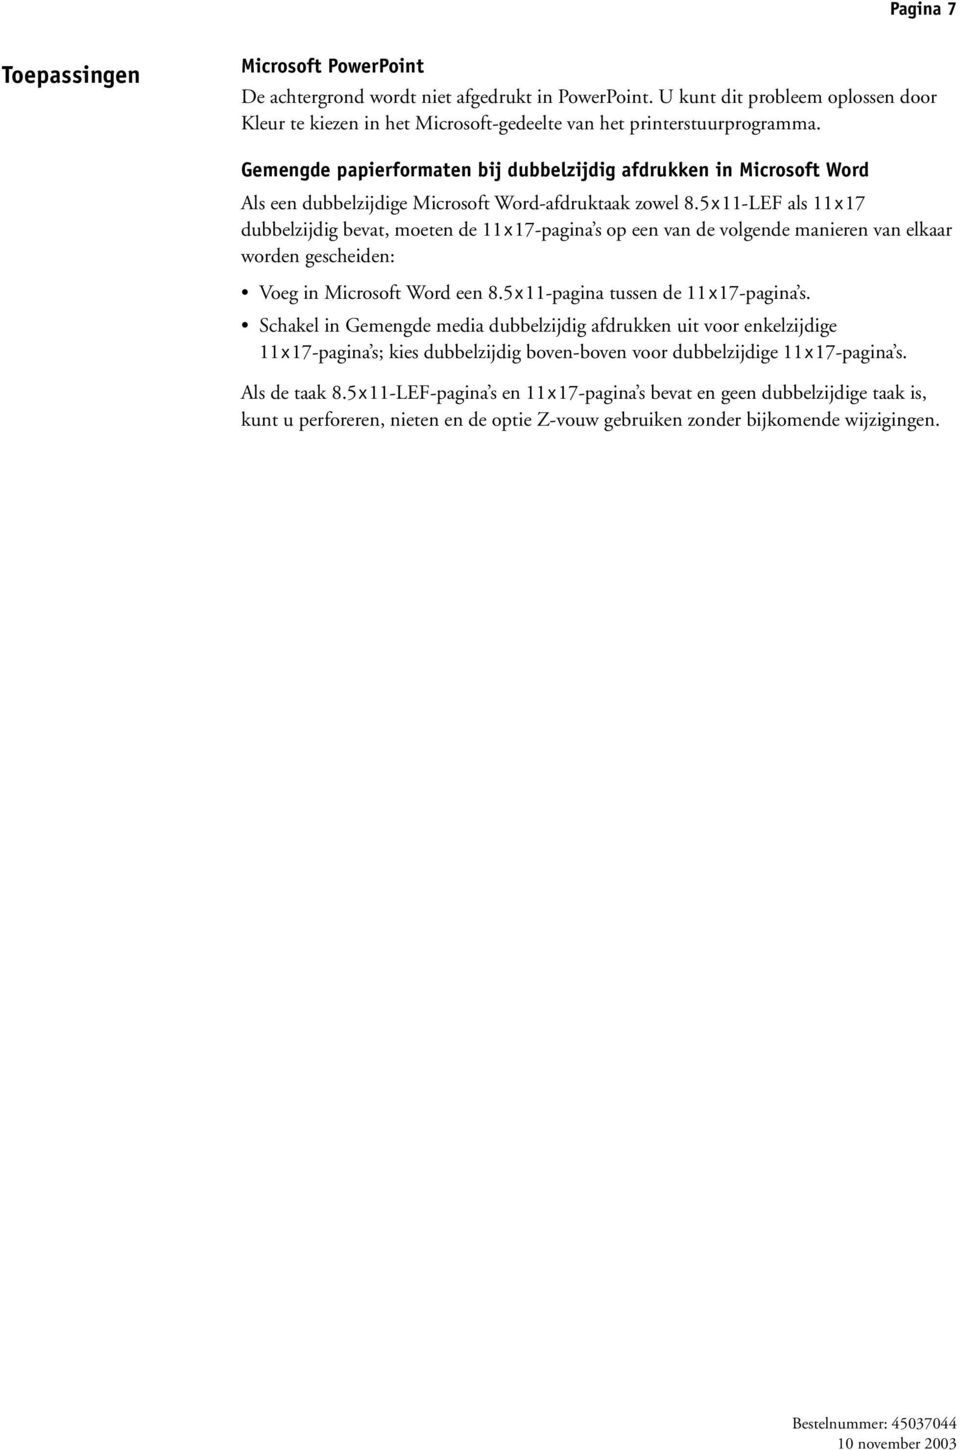 5x11-LEF als 11x17 dubbelzijdig bevat, moeten de 11x17-pagina s op een van de volgende manieren van elkaar worden gescheiden: Voeg in Microsoft Word een 8.5x11-pagina tussen de 11x17-pagina s.